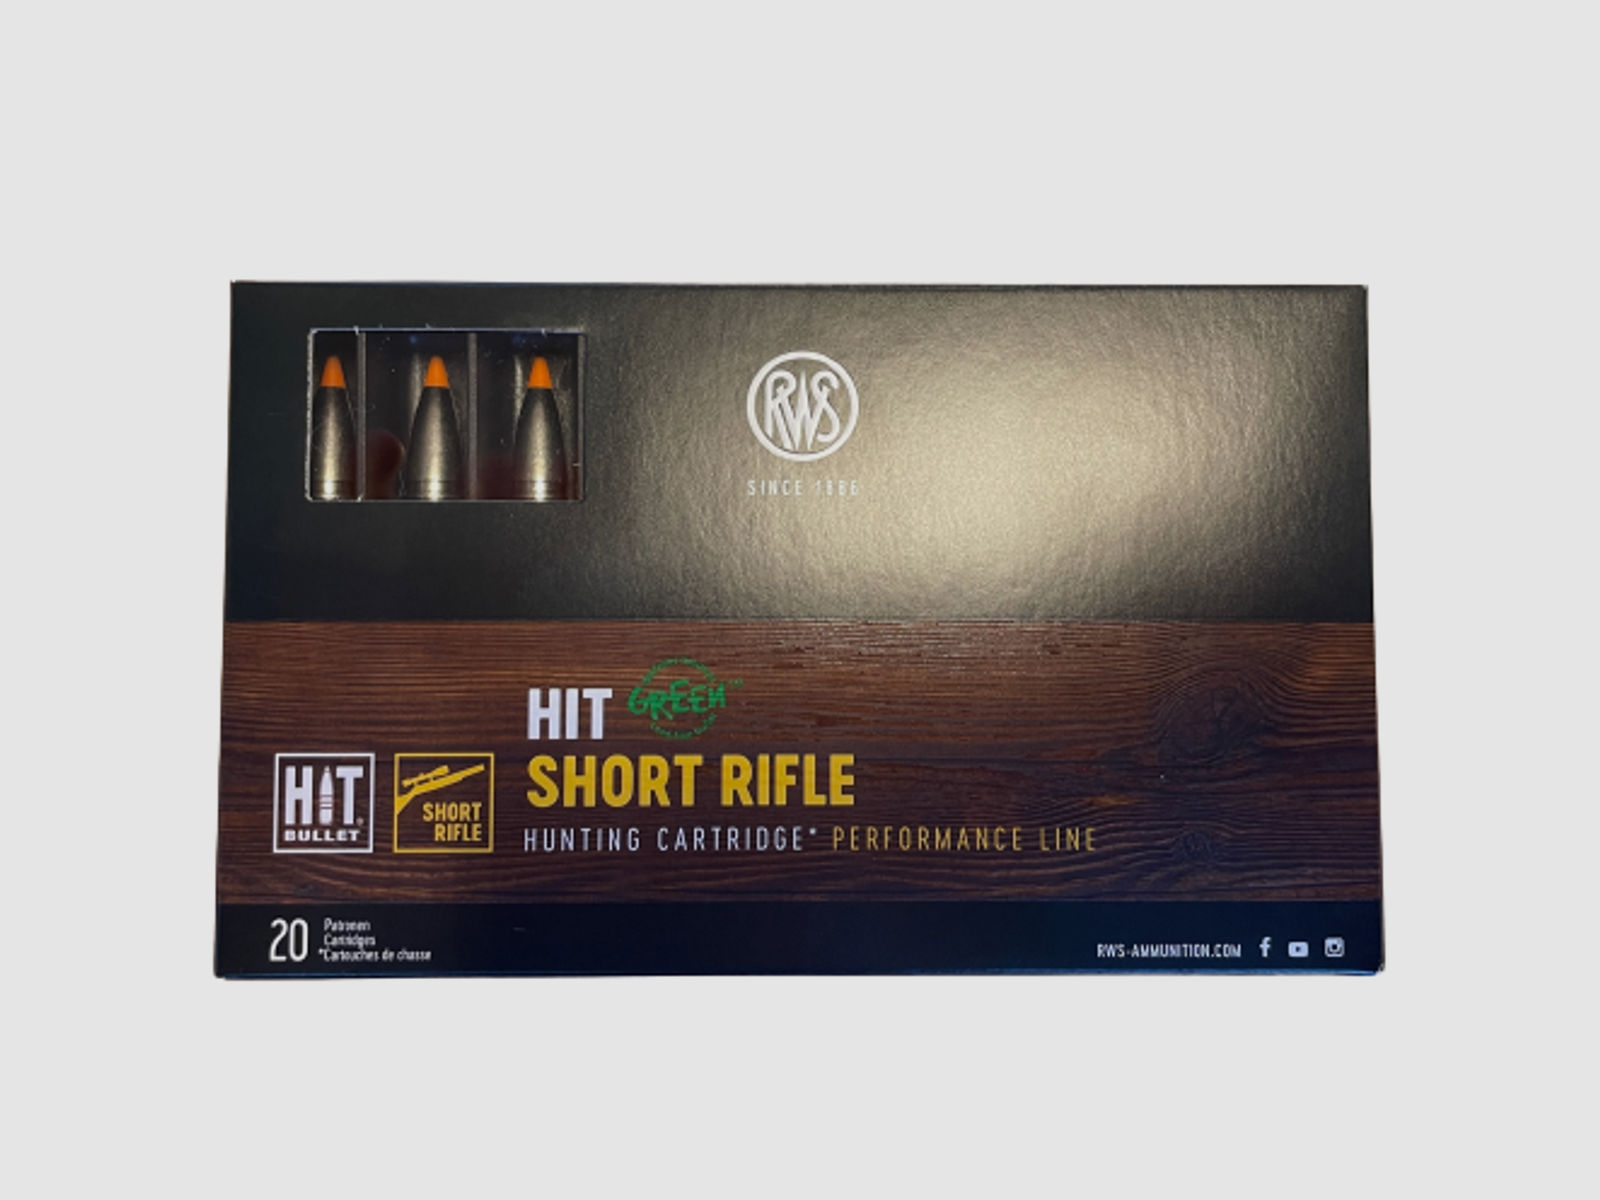 RWS 8x57 JS HIT Short Rifle 10,4 g 160 gr